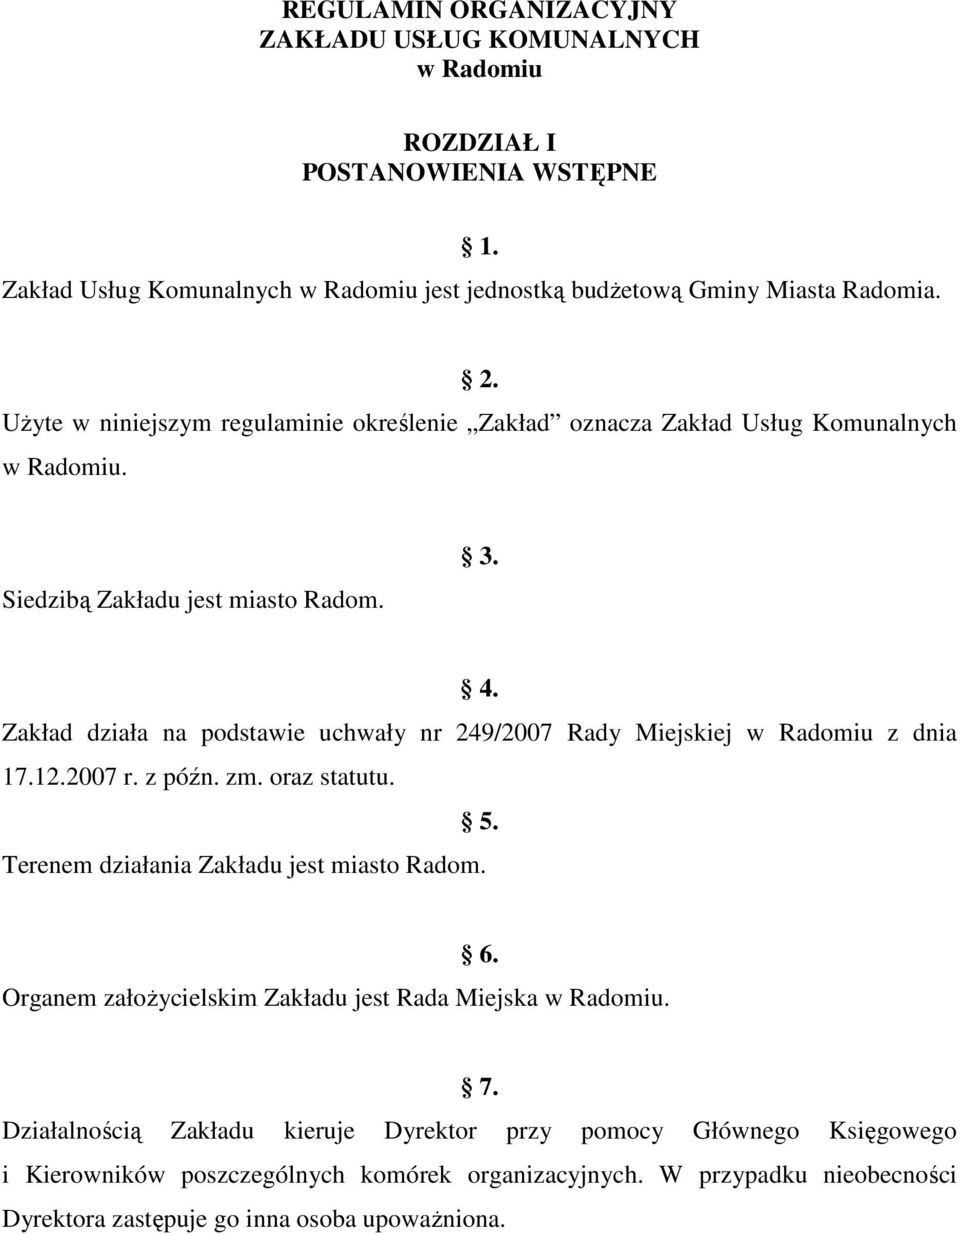 Zakład działa na podstawie uchwały nr 249/2007 Rady Miejskiej w Radomiu z dnia 17.12.2007 r. z późn. zm. oraz statutu. 5. Terenem działania Zakładu jest miasto Radom. 6.